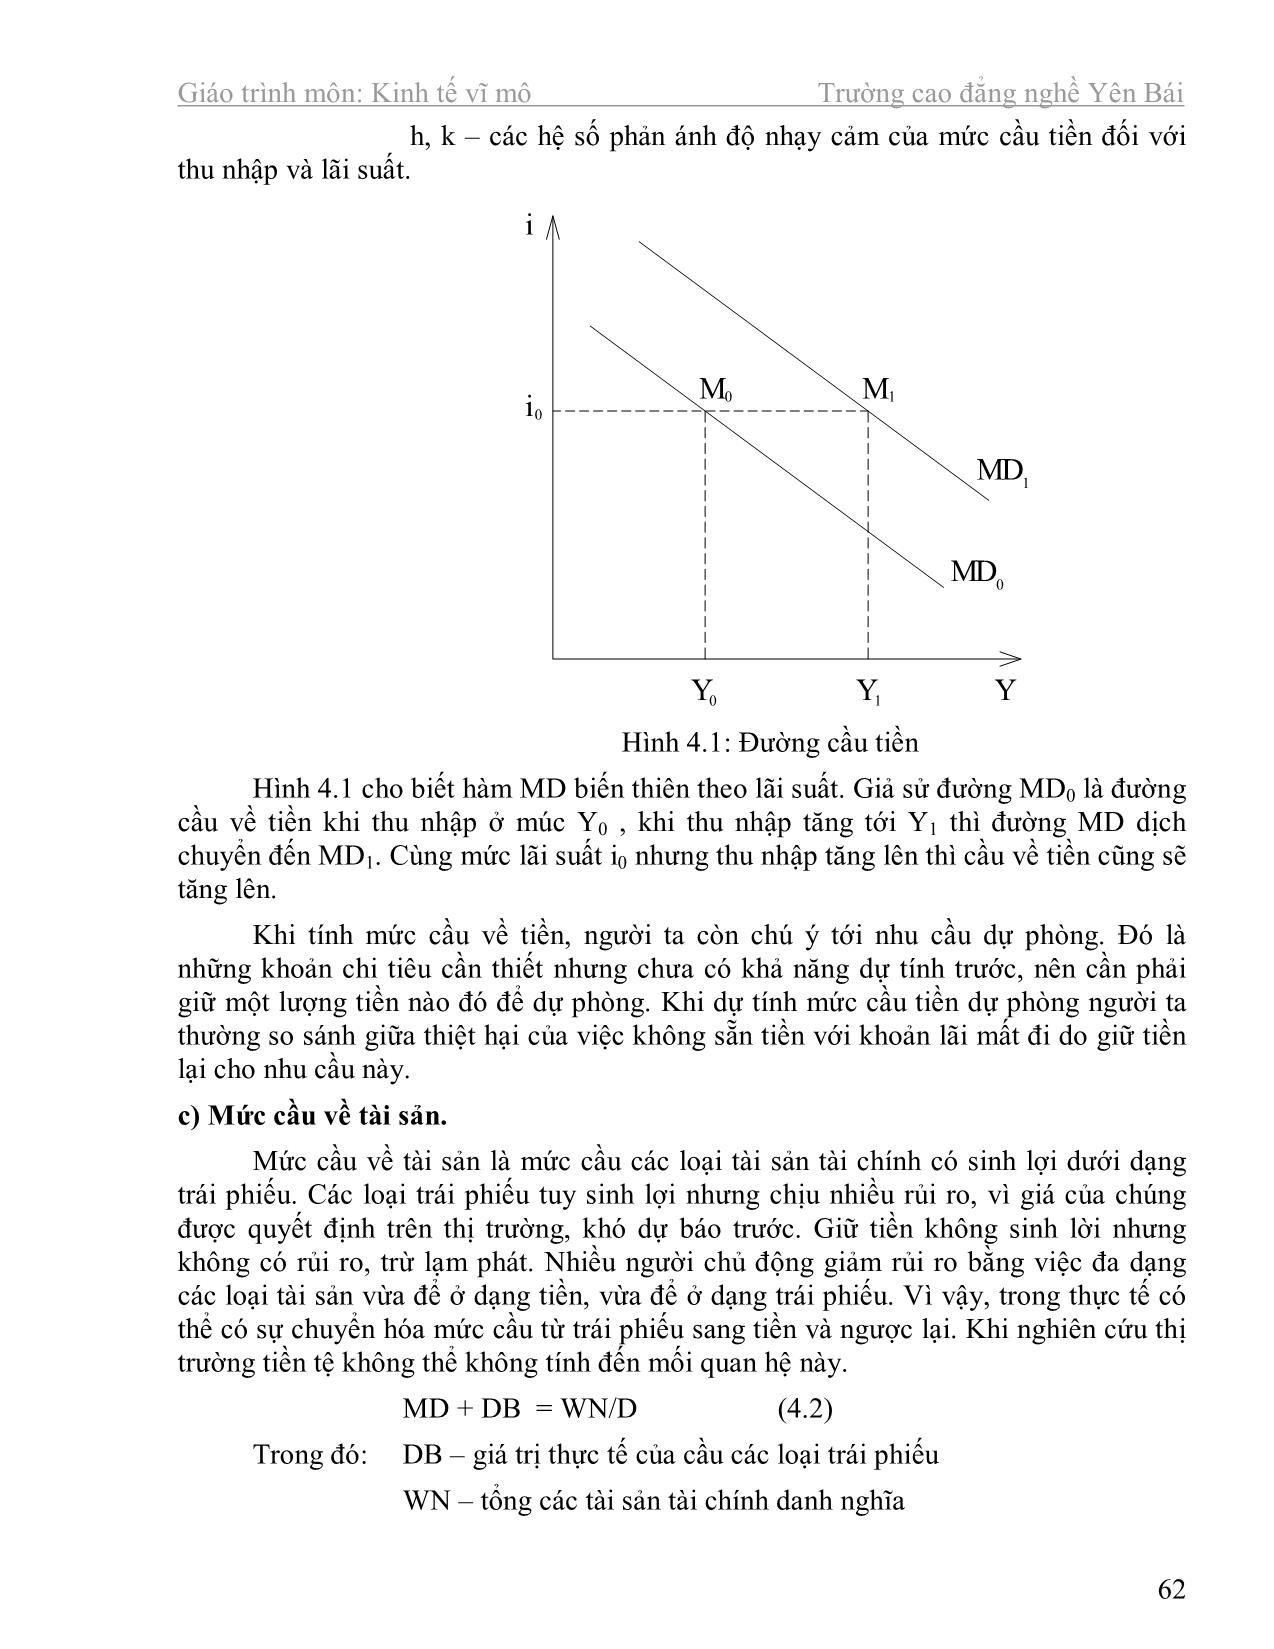 Giáo trình Kinh tế học vĩ mô (Phần 2) trang 4